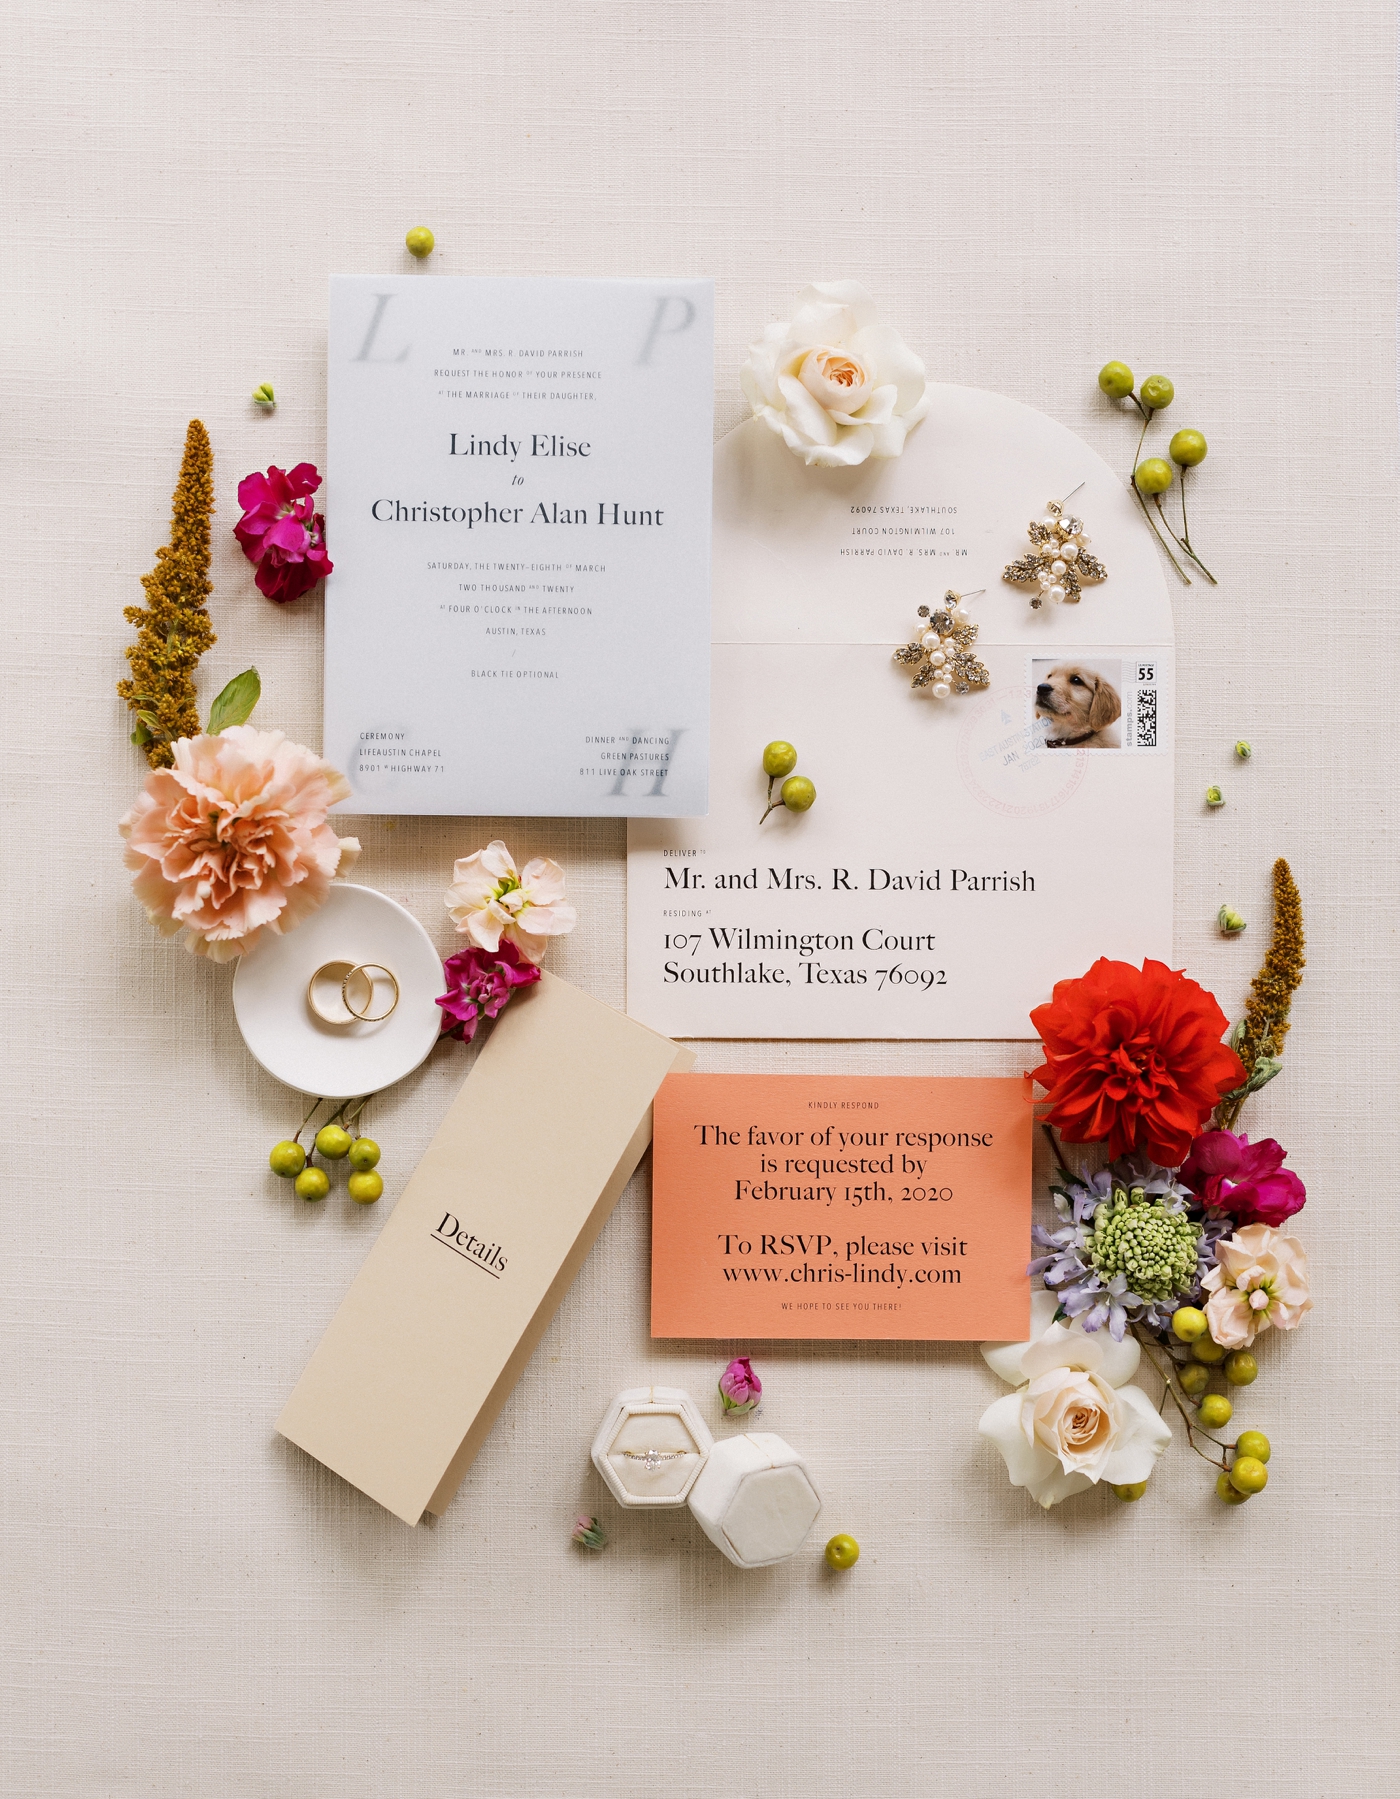 Modern wedding invitations for an Austin wedding